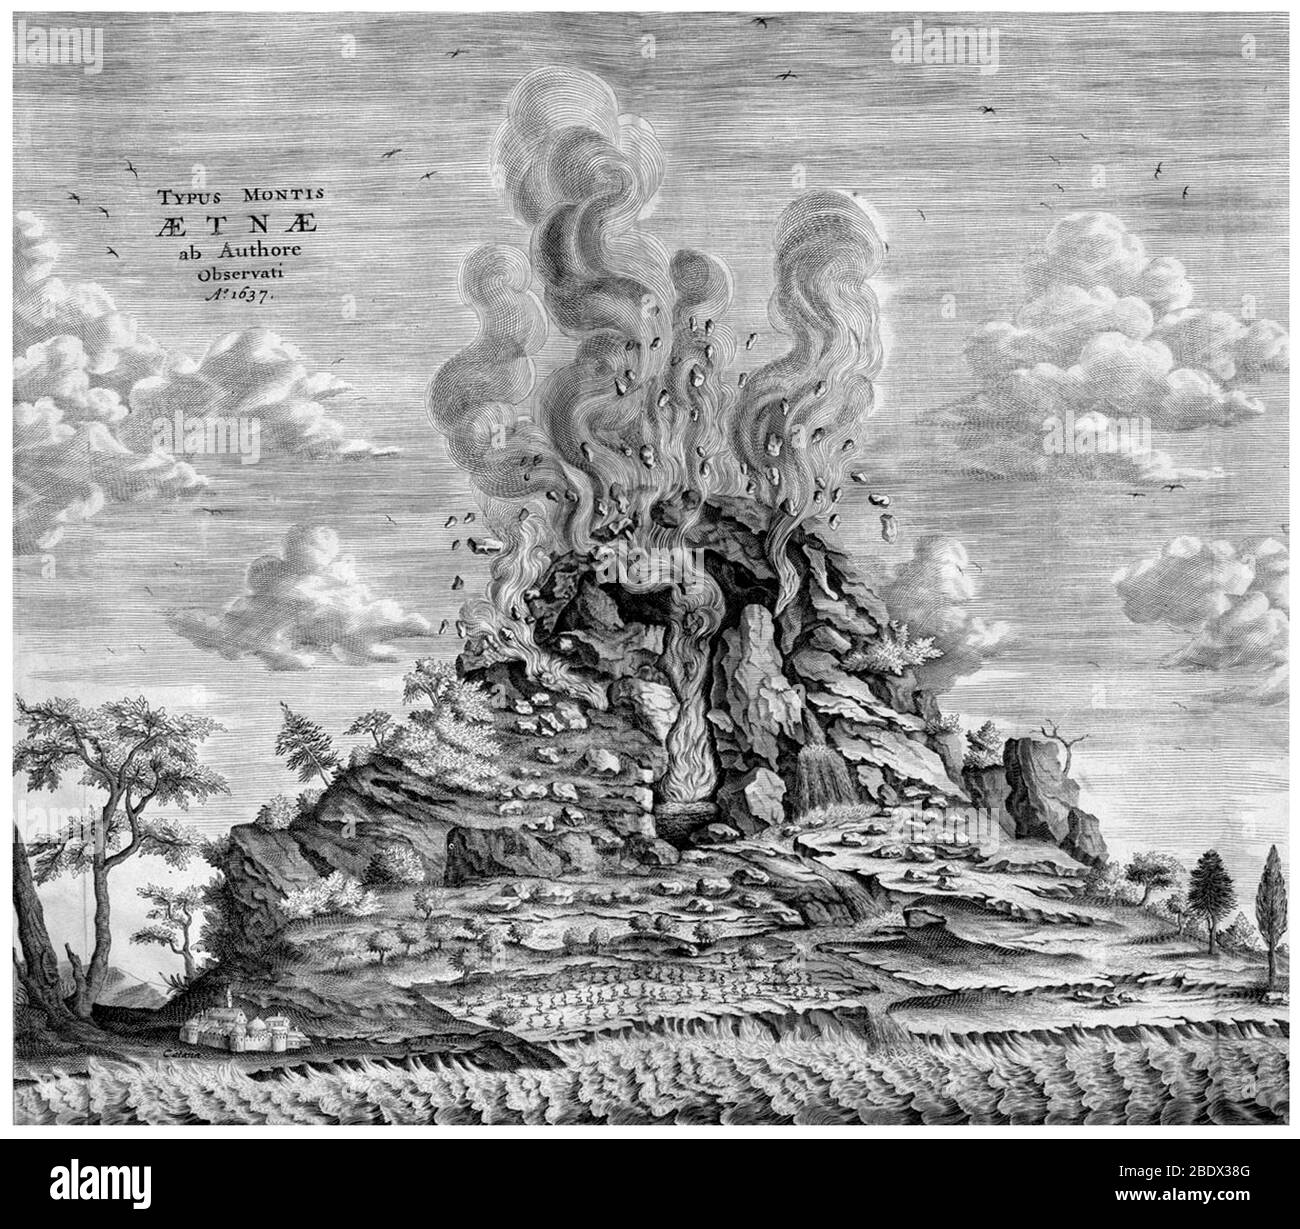 Il gesuita Atanasio Kircher (2 maggio 1602 - 28 novembre 1680) ha assistito alle eruzioni dell'Etna e di Stromboli, poi ha visitato il cratere del Vesuvio e pubblicato la sua visione di una Terra con un fuoco centrale collegato a numerosi altri causati dall'incendio di zolfo, bitume e carbone. L'Etna è uno stratovulcano attivo sulla costa orientale della Sicilia. L'Etna è uno dei vulcani più attivi al mondo ed è in uno stato di attività quasi costante. I fertili terreni vulcanici sostengono un'agricoltura estensiva, con vigneti e frutteti sparsi sulle pendici inferiori della montagna e. Foto Stock